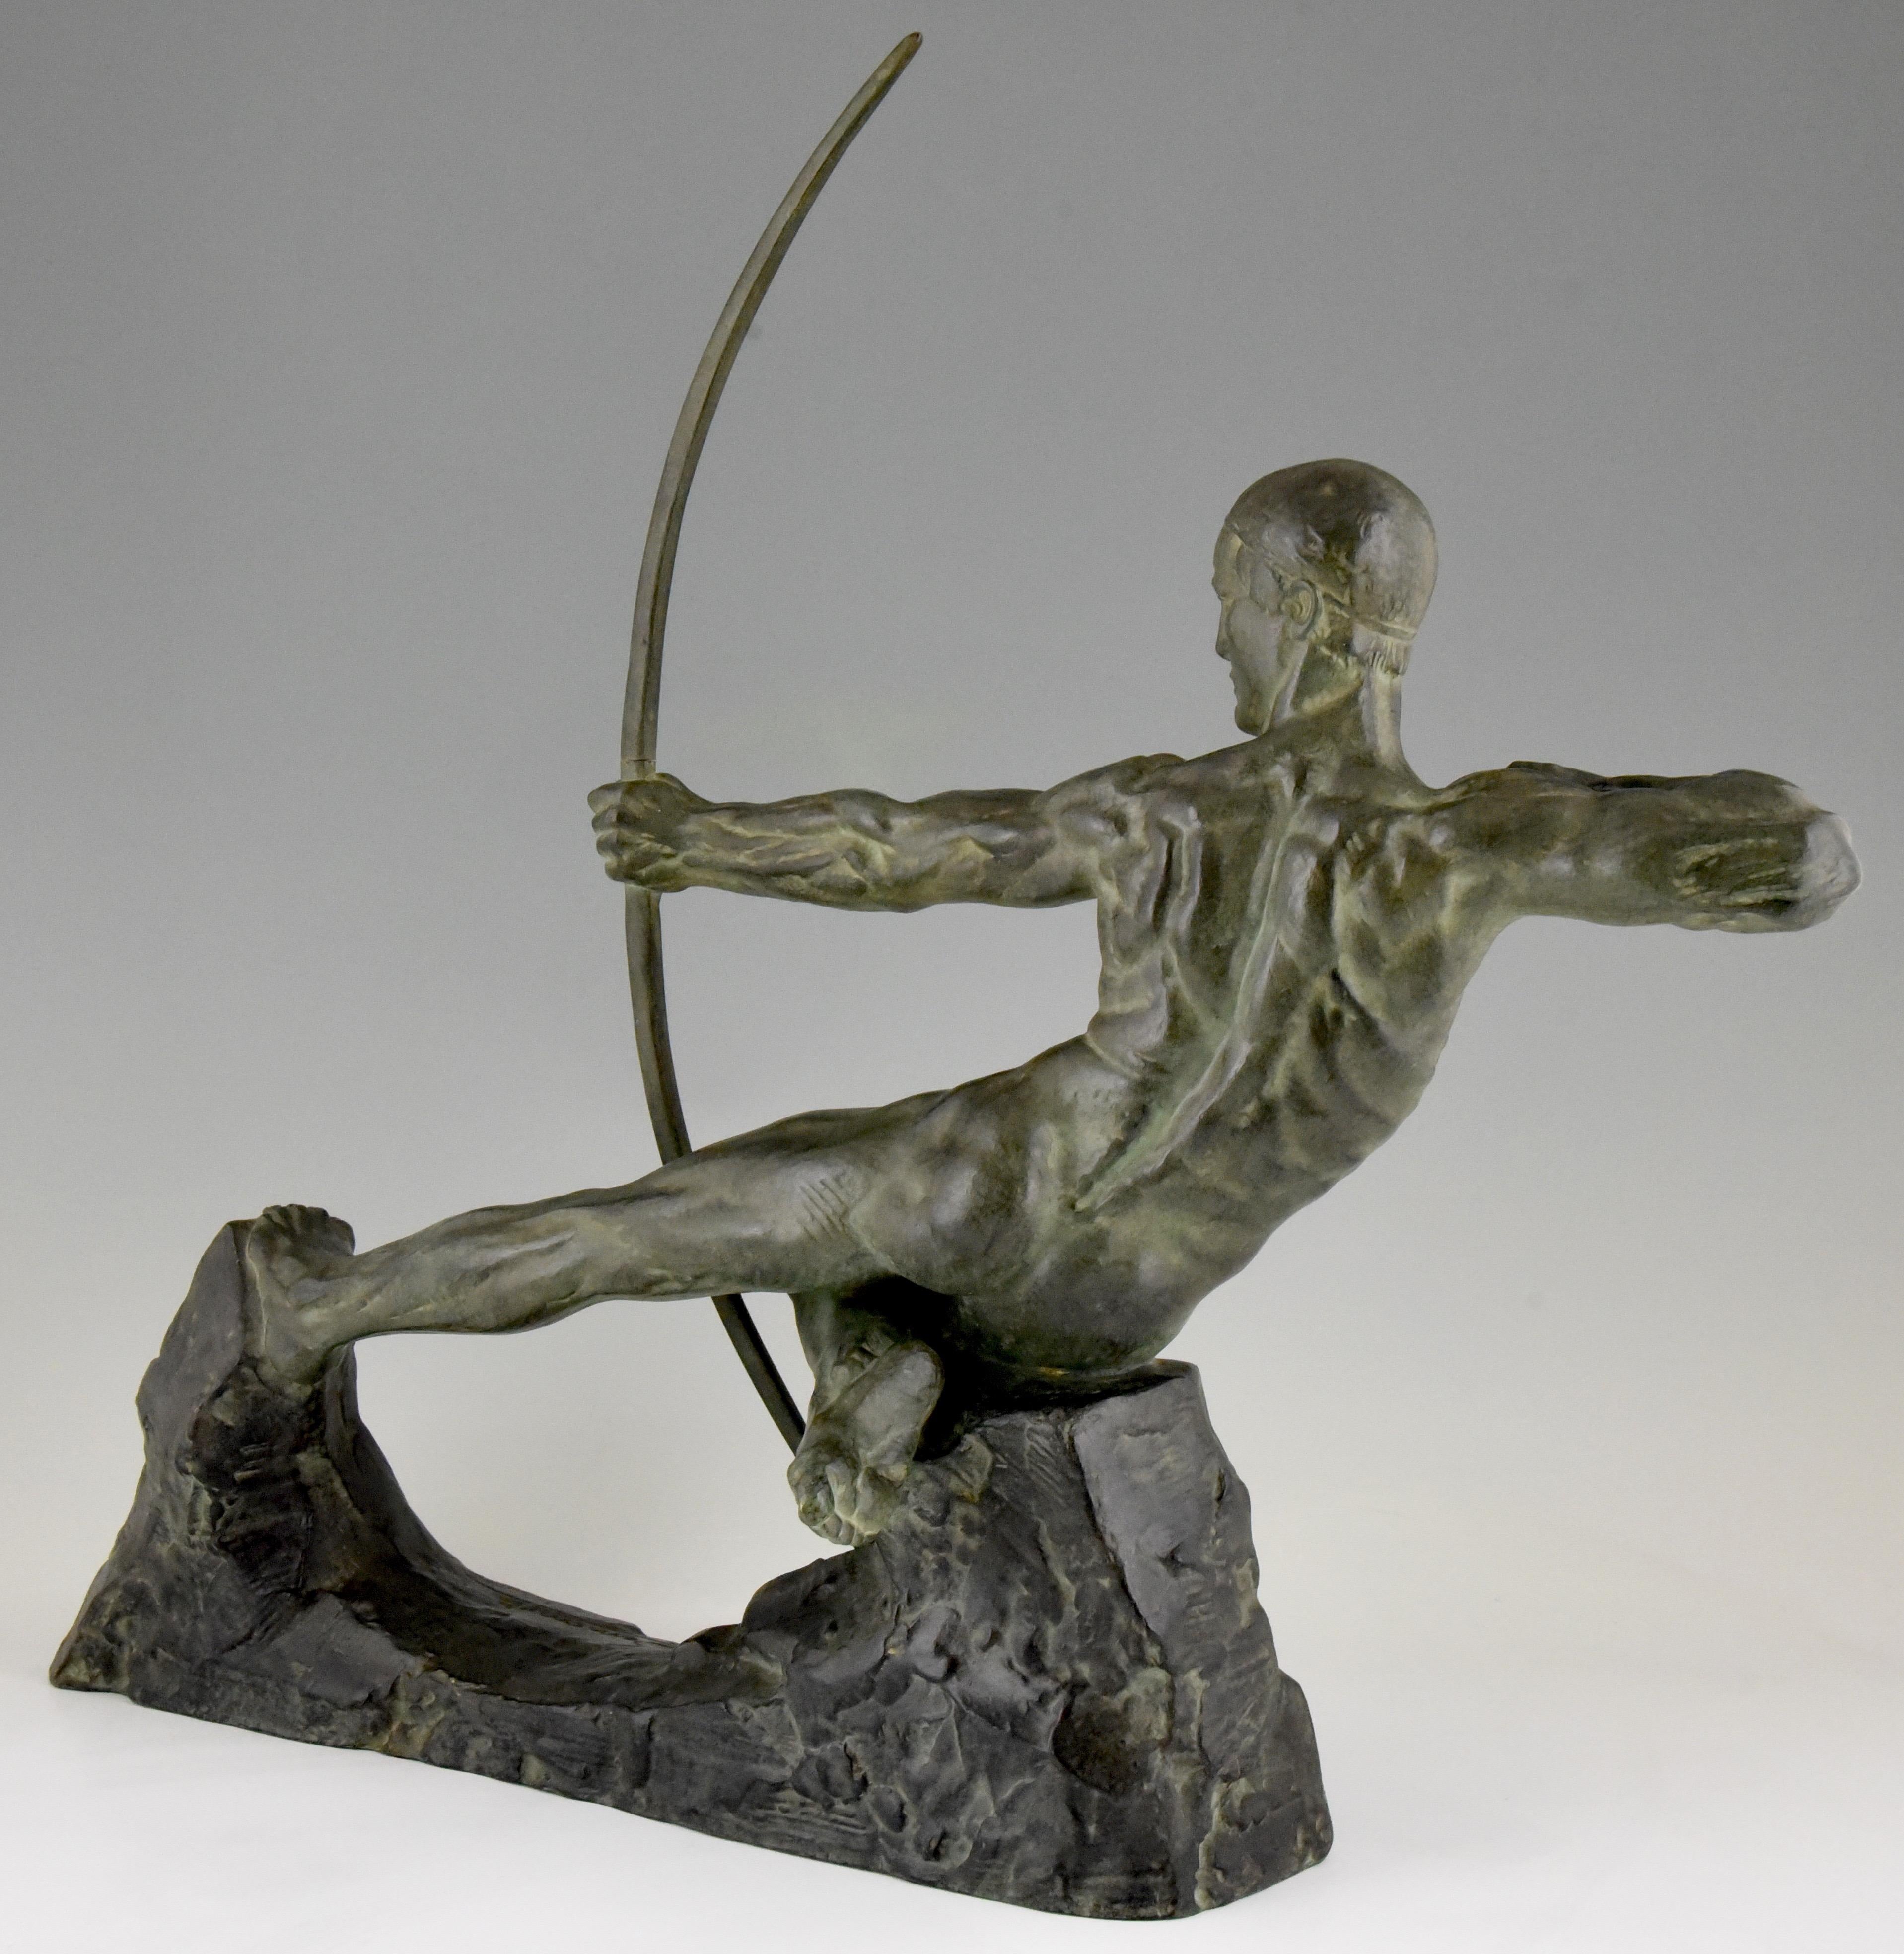 Art Deco Bronze Skulptur Männlicher Akt Archer Hercules Victor Demanet 1925 (20. Jahrhundert)